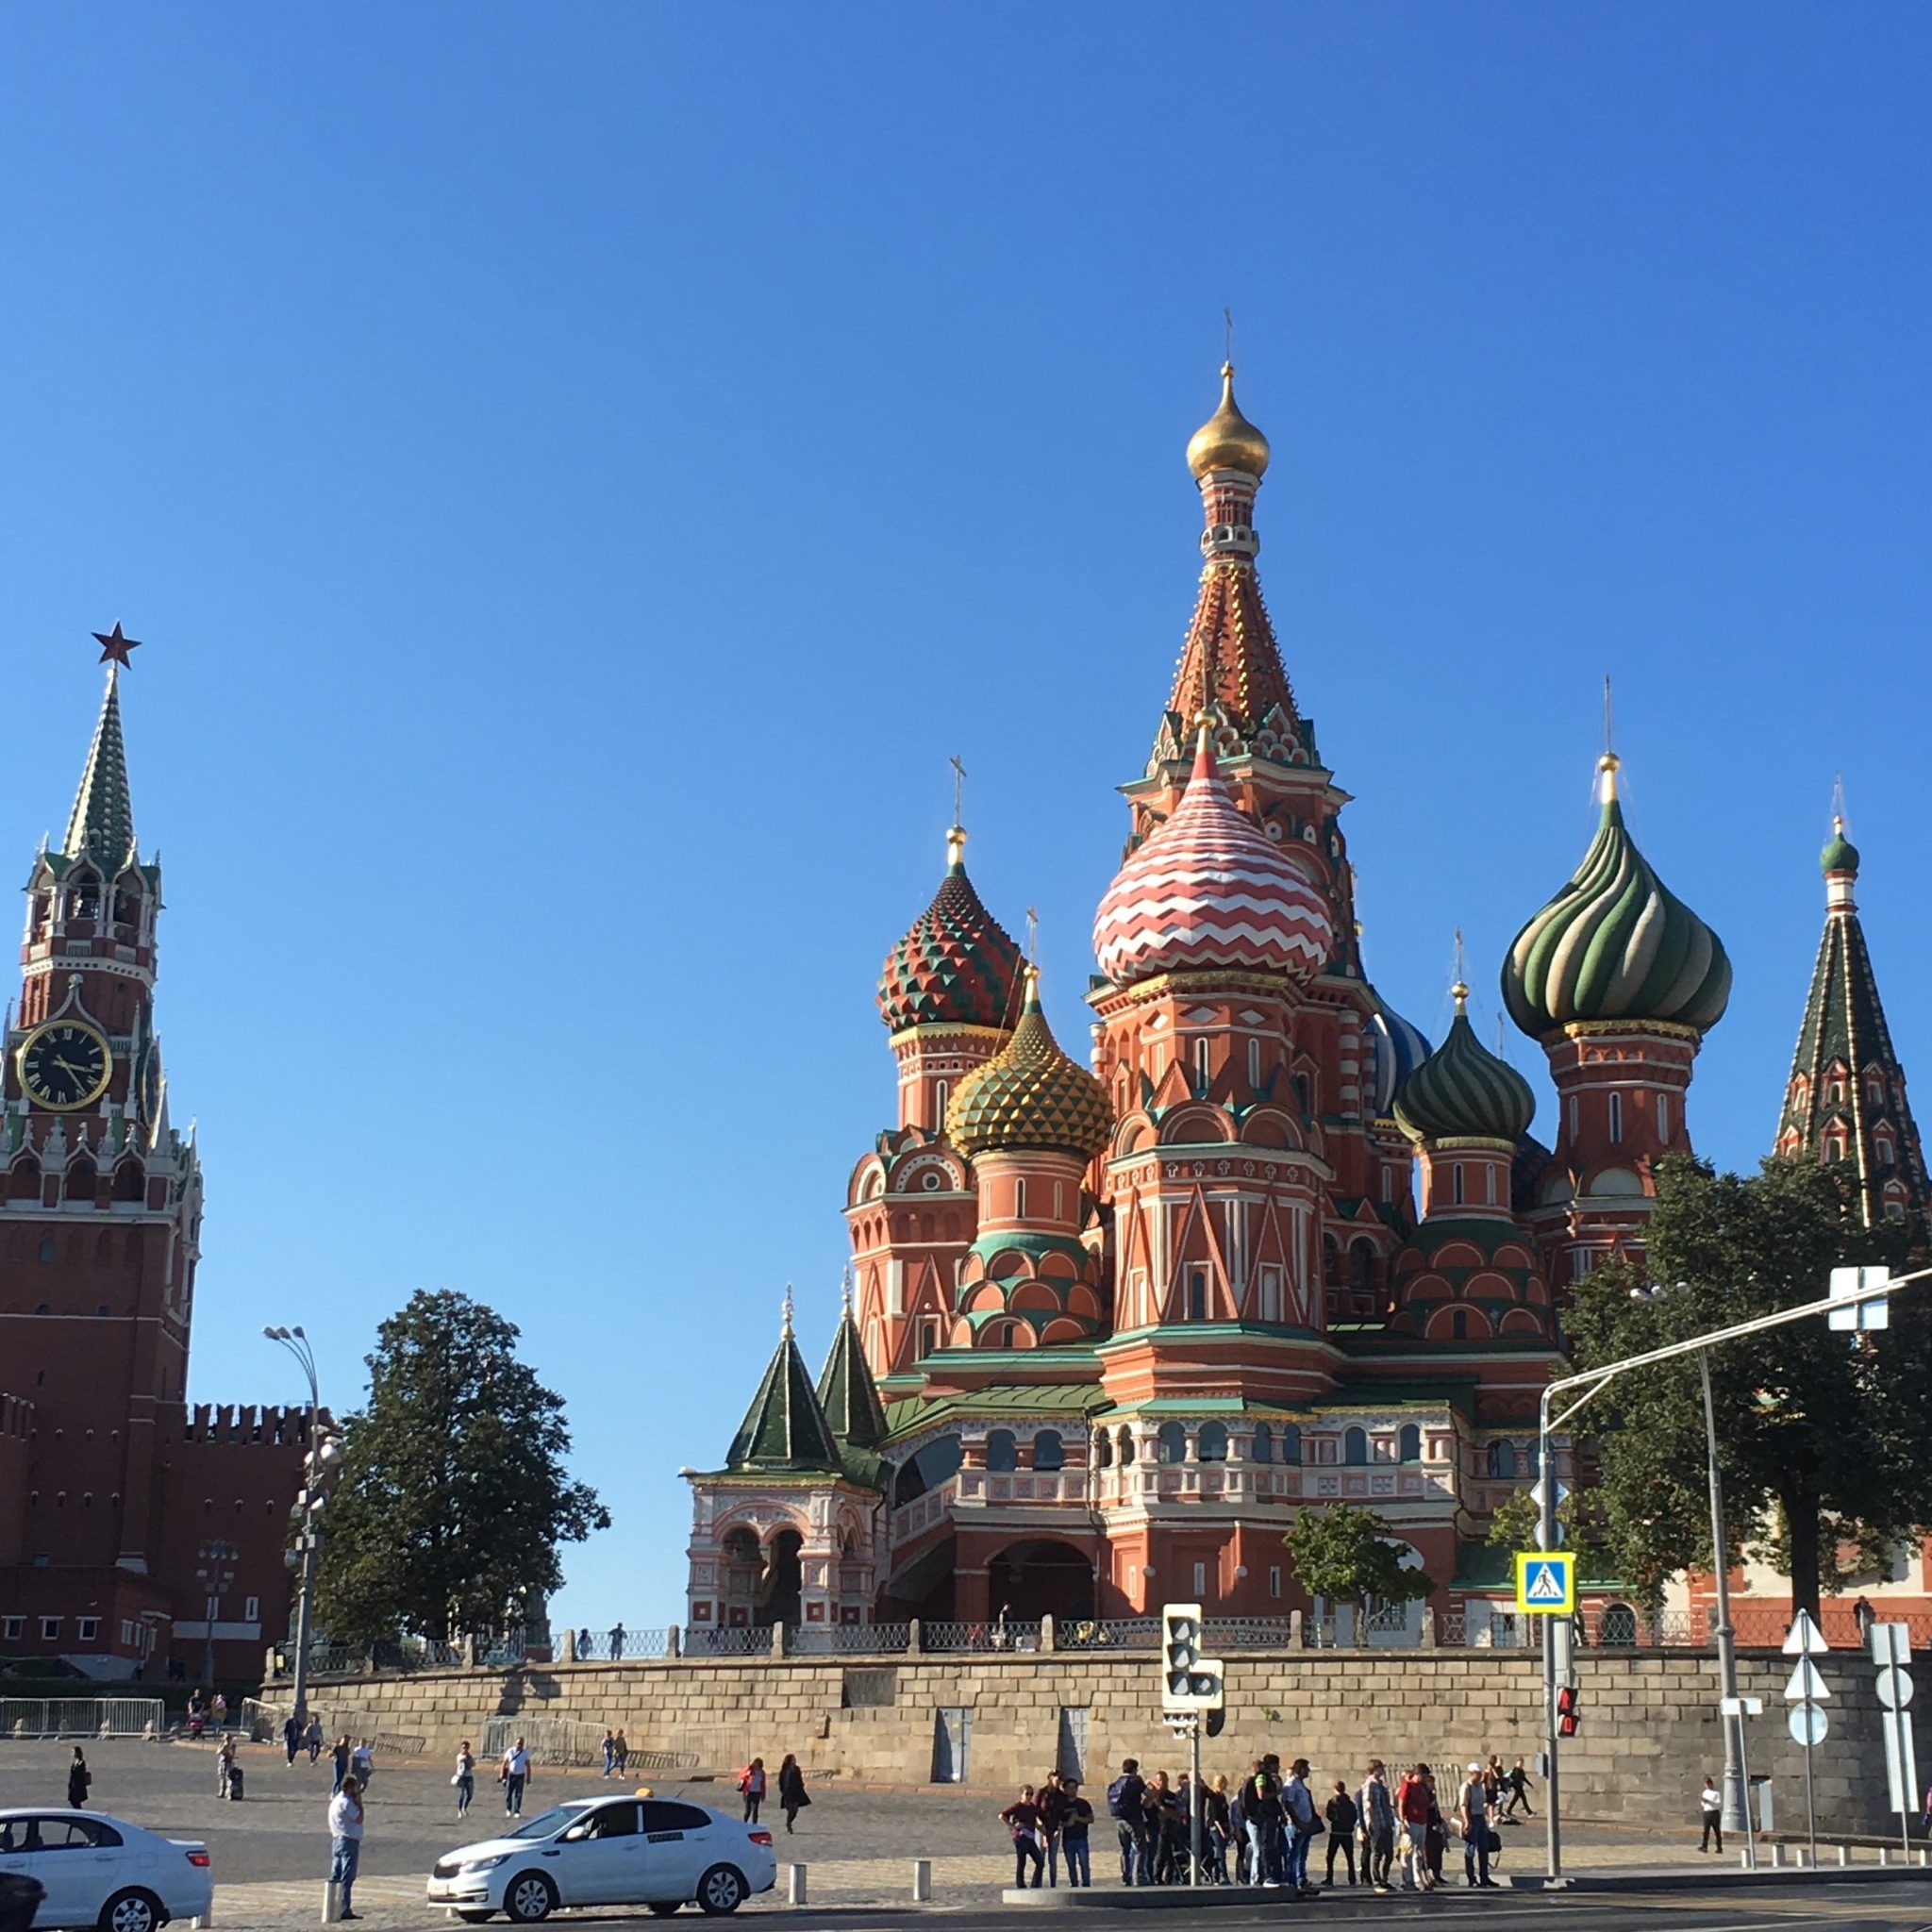 オルガン針株式会社が運営するミシンユーザーのための情報発信型通販サイトArt Stitch Room Powered by ORGAN NEEDLE CO.,LTD.（アートステッチルーム）|ロシア訪問記 #1